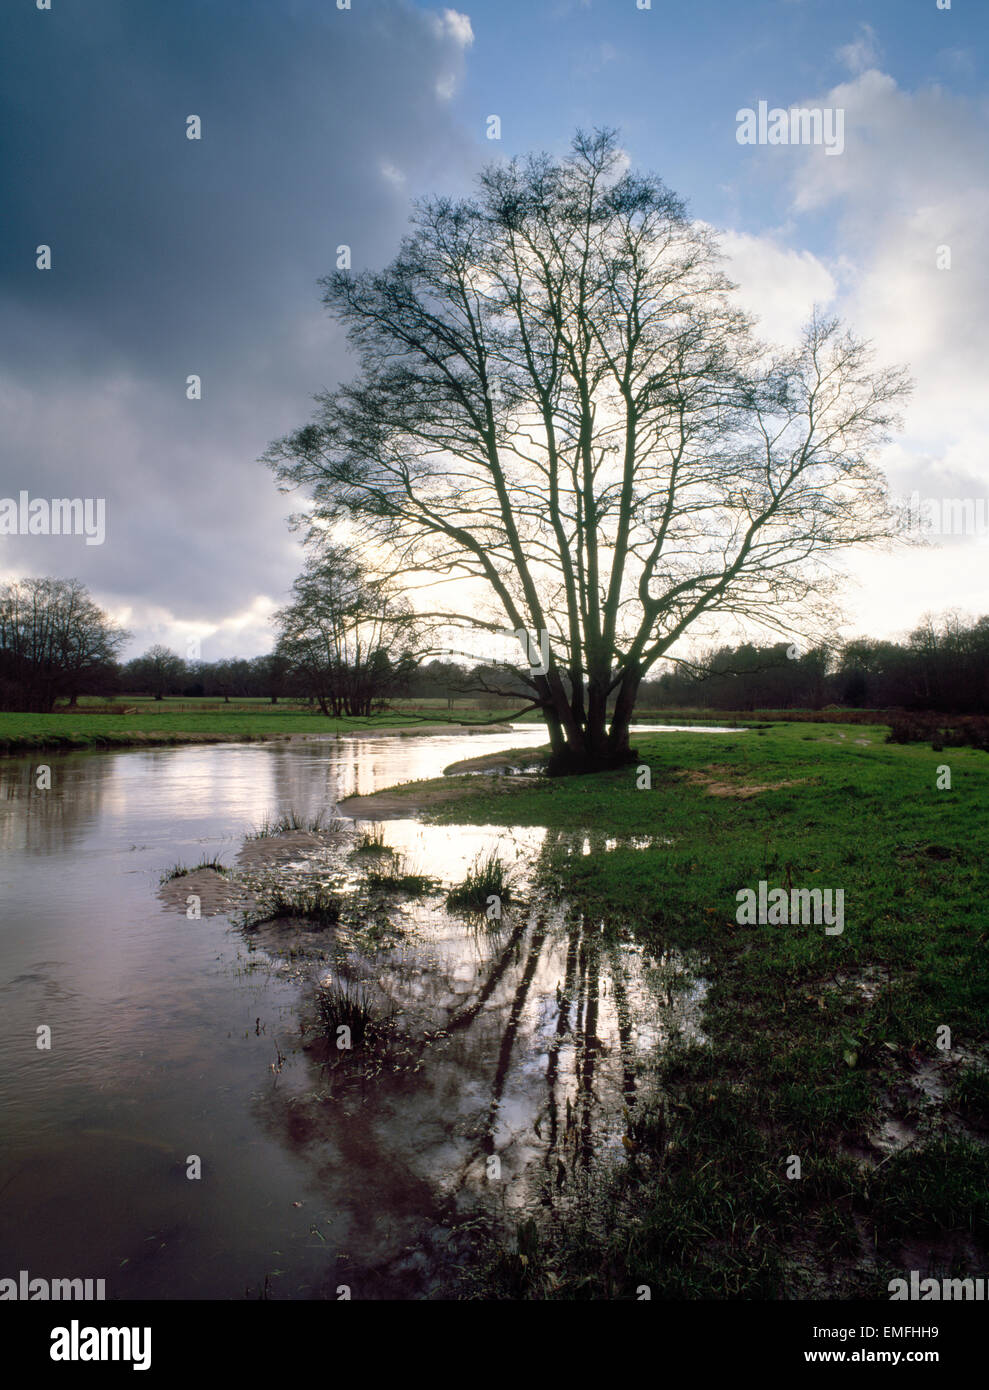 Erle Baum wächst am Ufer des Fluss Wey, auf Thundry Wiesen, Elstead, Surrey, England. Flusspegel hoch nach Starkregen. Stockfoto